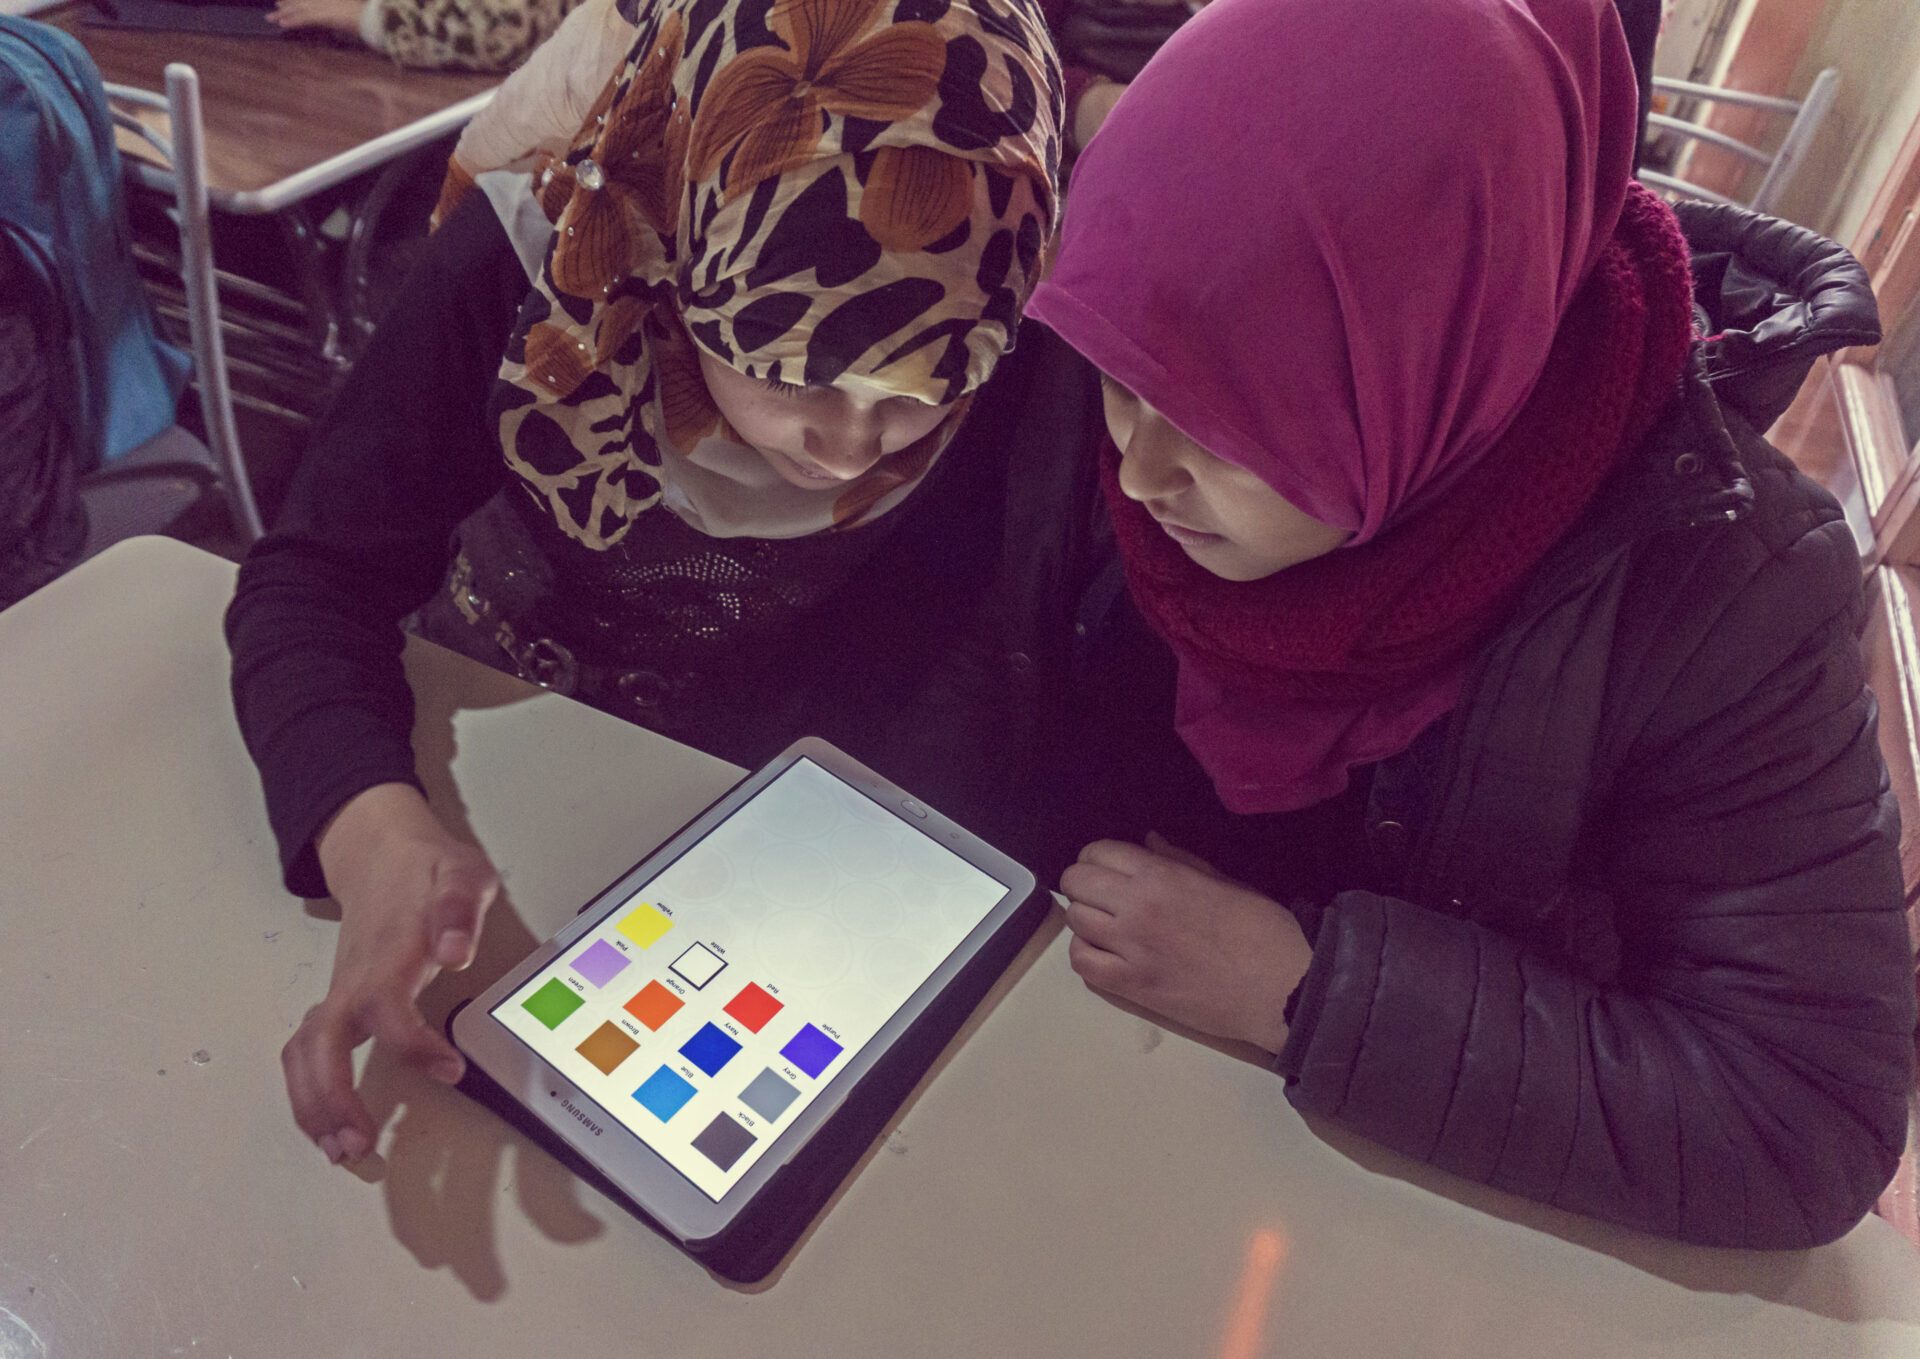 TSF développe aussi des mission ponctuelles d'aide à l'éducation et de désenclavement numérique. Ici deux petites filles syriennes ont accès à une tablette avec une connexion Internet.